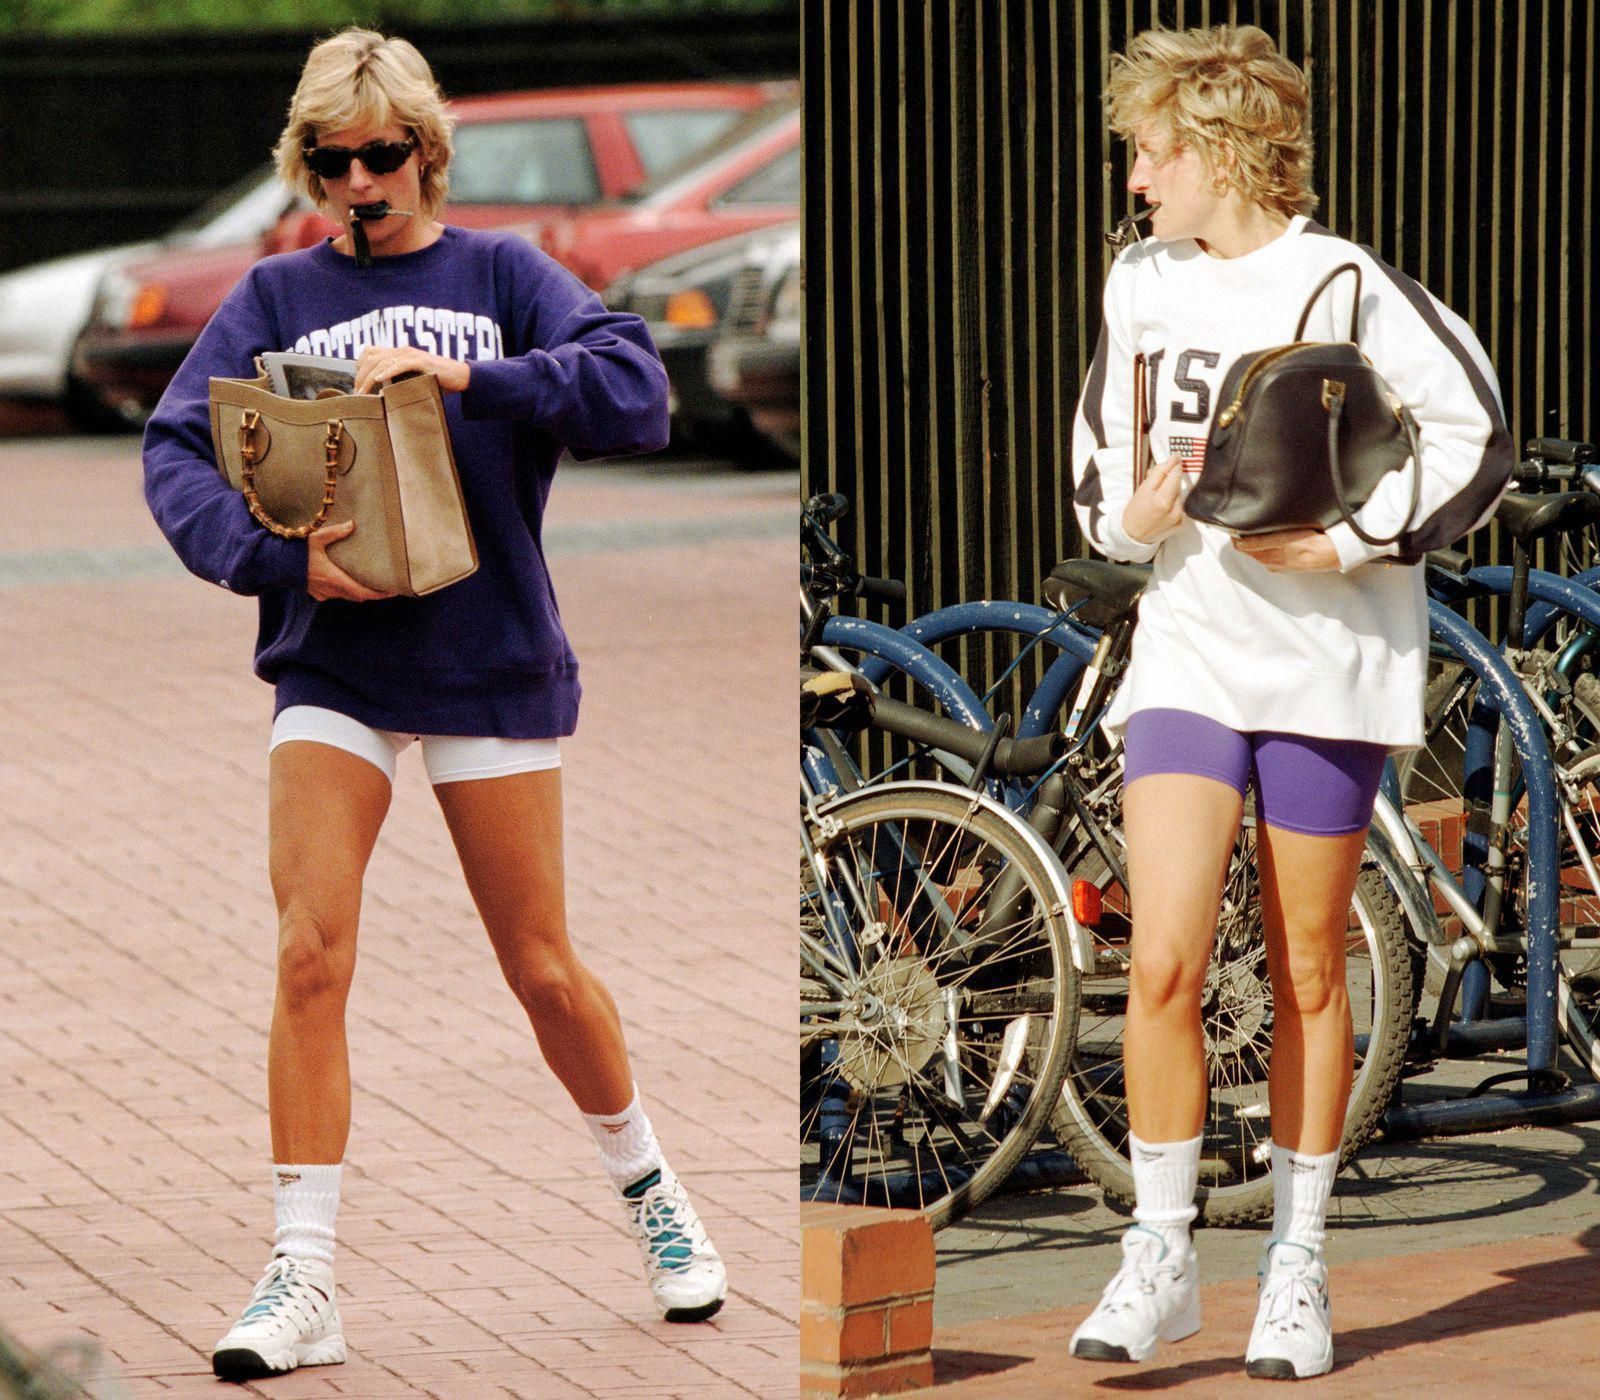 Vương phi Diana mặc trang phục thể thao với áo sweater và quần đạp xe